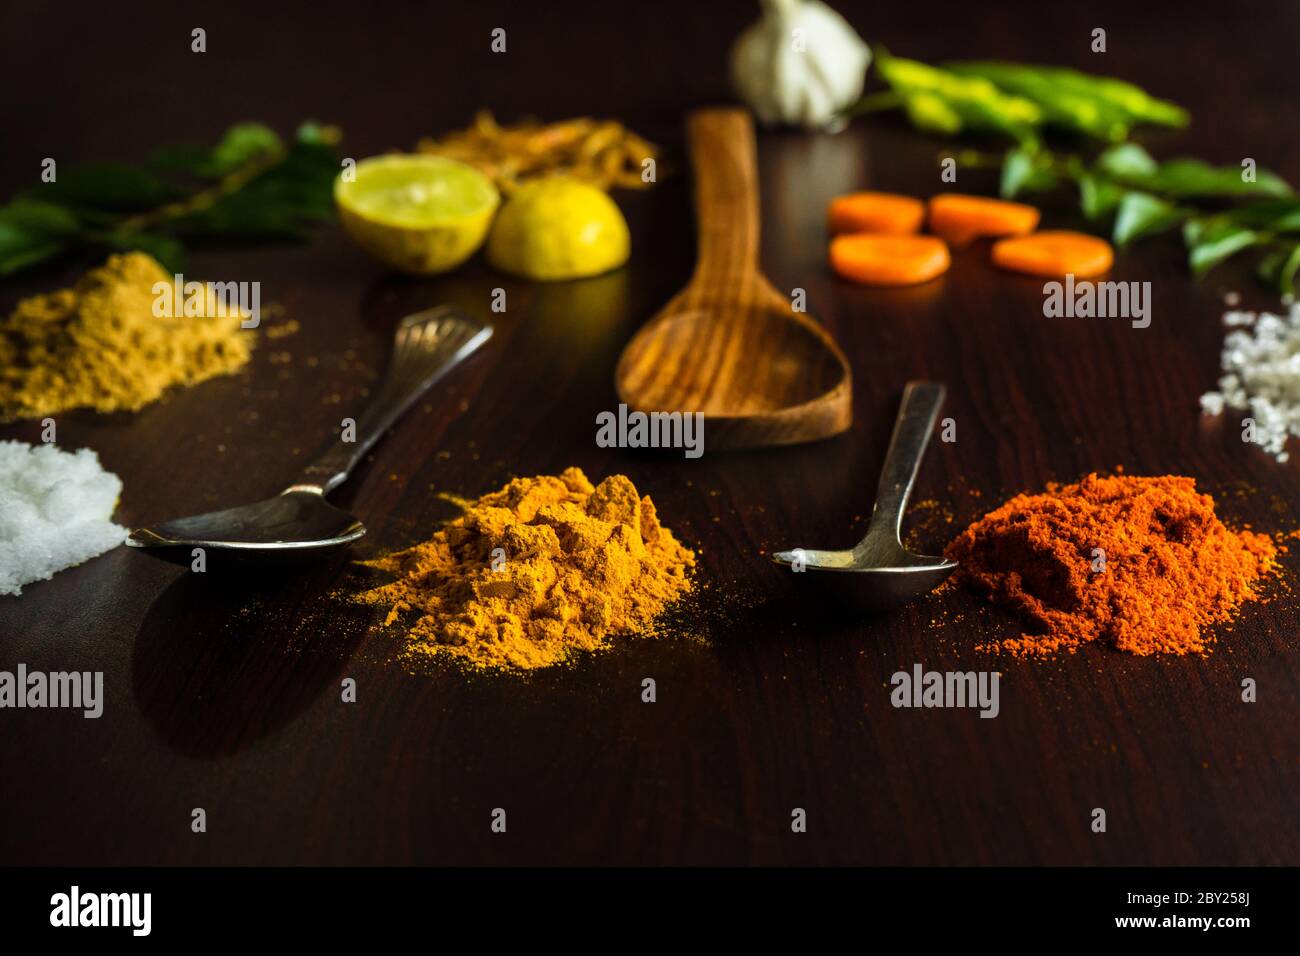 Les ingrédients de la nourriture magnifiquement garnie sur le dessus de table incluent diverses épices comme le froid, le citron, les feuilles de curry, le gingembre, l'ail, les crevettes, les cuillères etc Banque D'Images